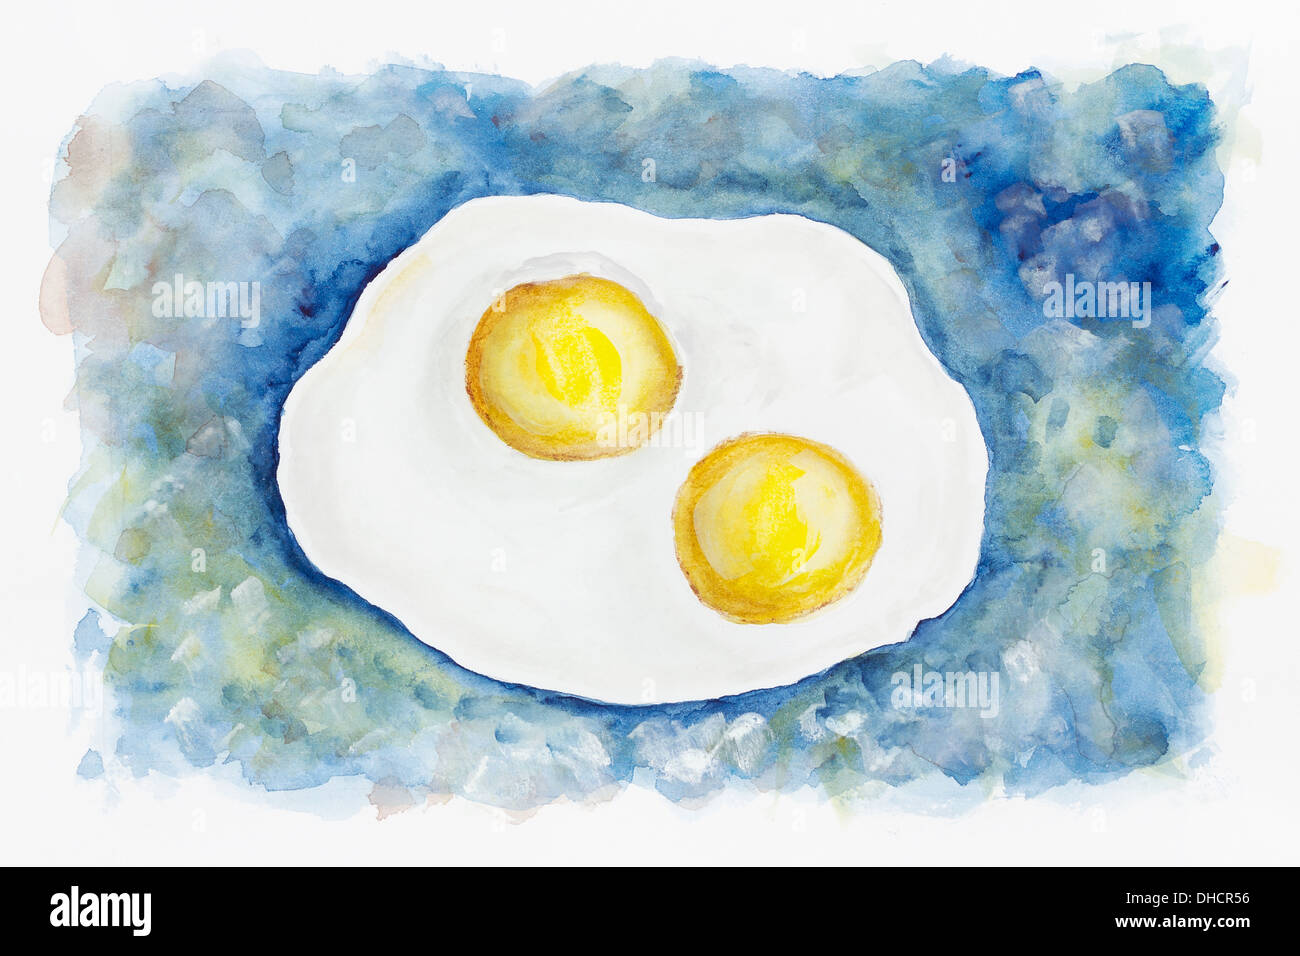 Flying celeste uova fritte Foto Stock